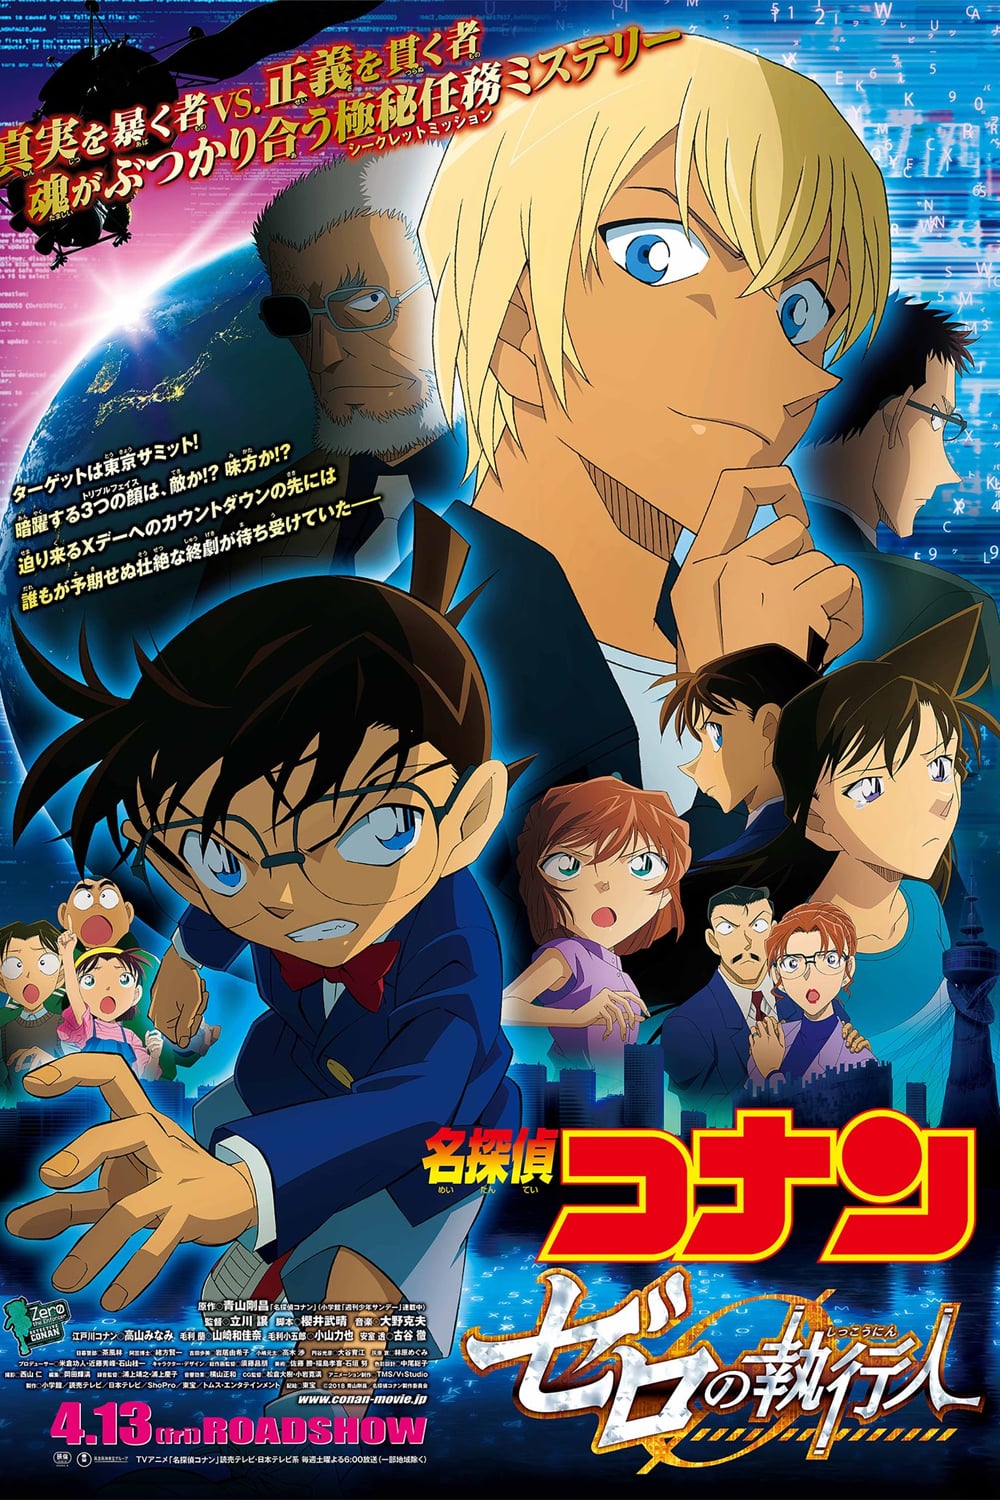 فيلم المحقق كونان 22 جلاد زيرو Detective Conan Movie 22 مترجم بلوراي بوابة الأنمي